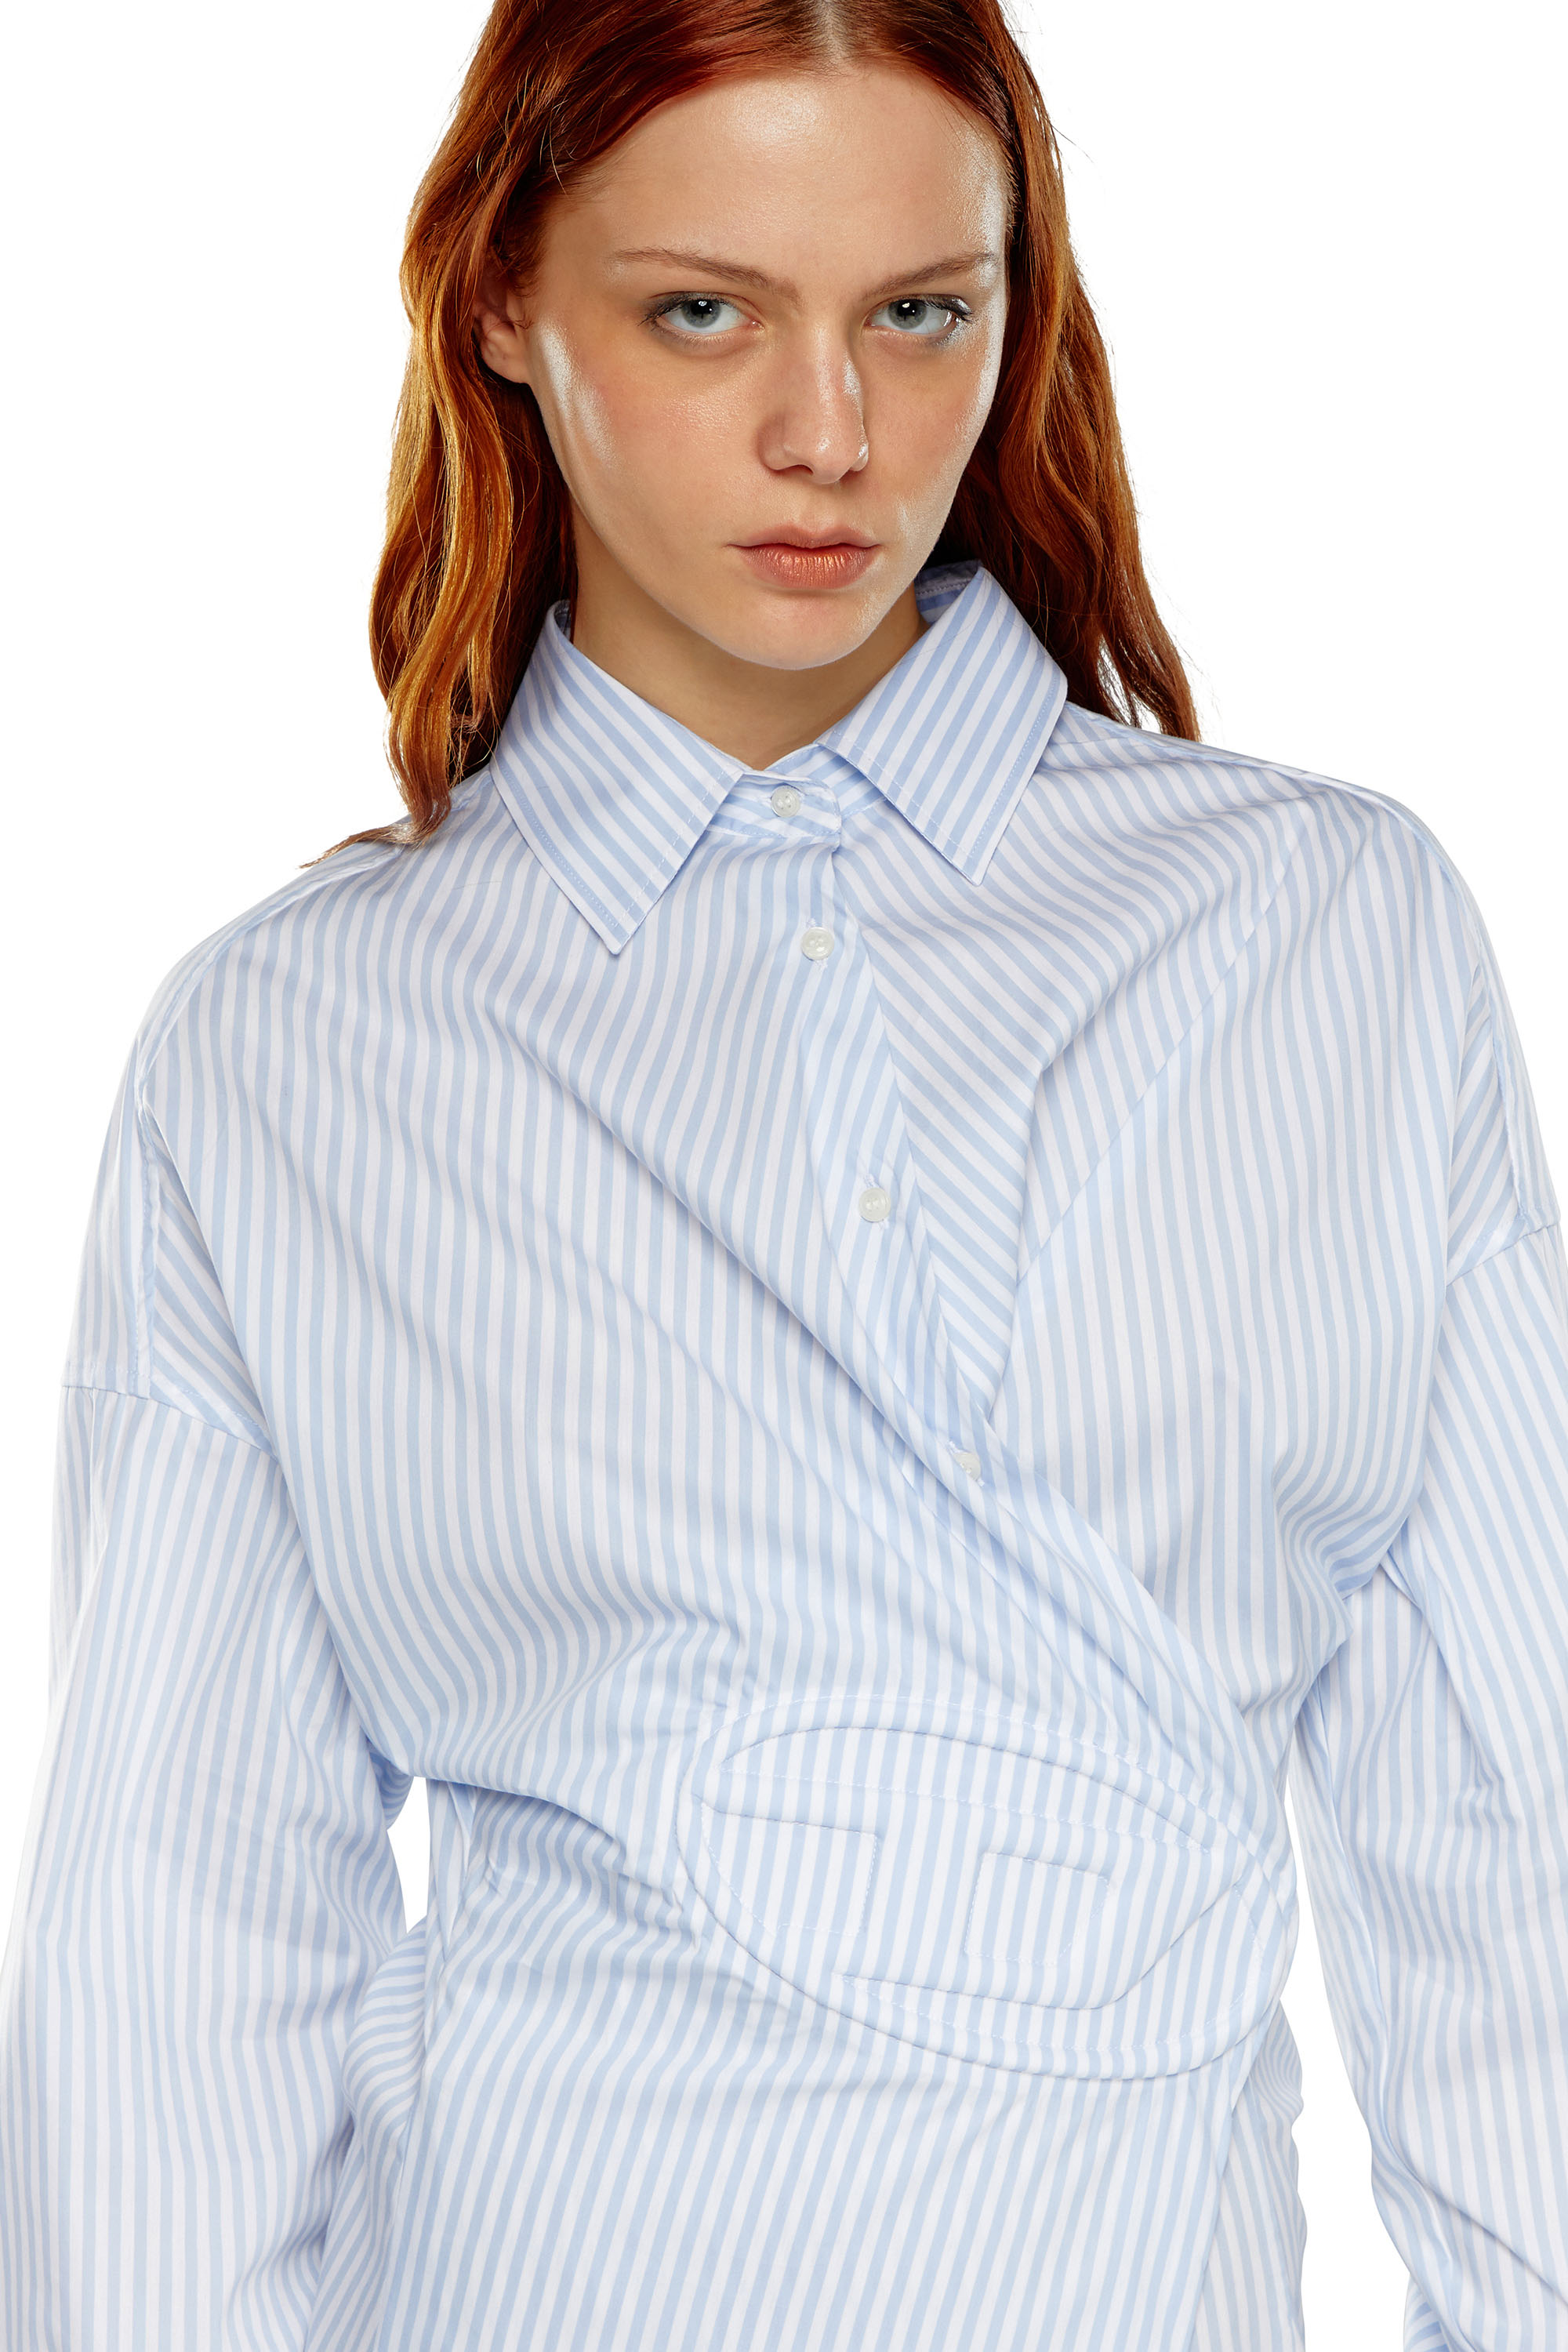 Diesel - D-SIZEN-N2, Woman Short striped shirt dress in Blue - Image 3